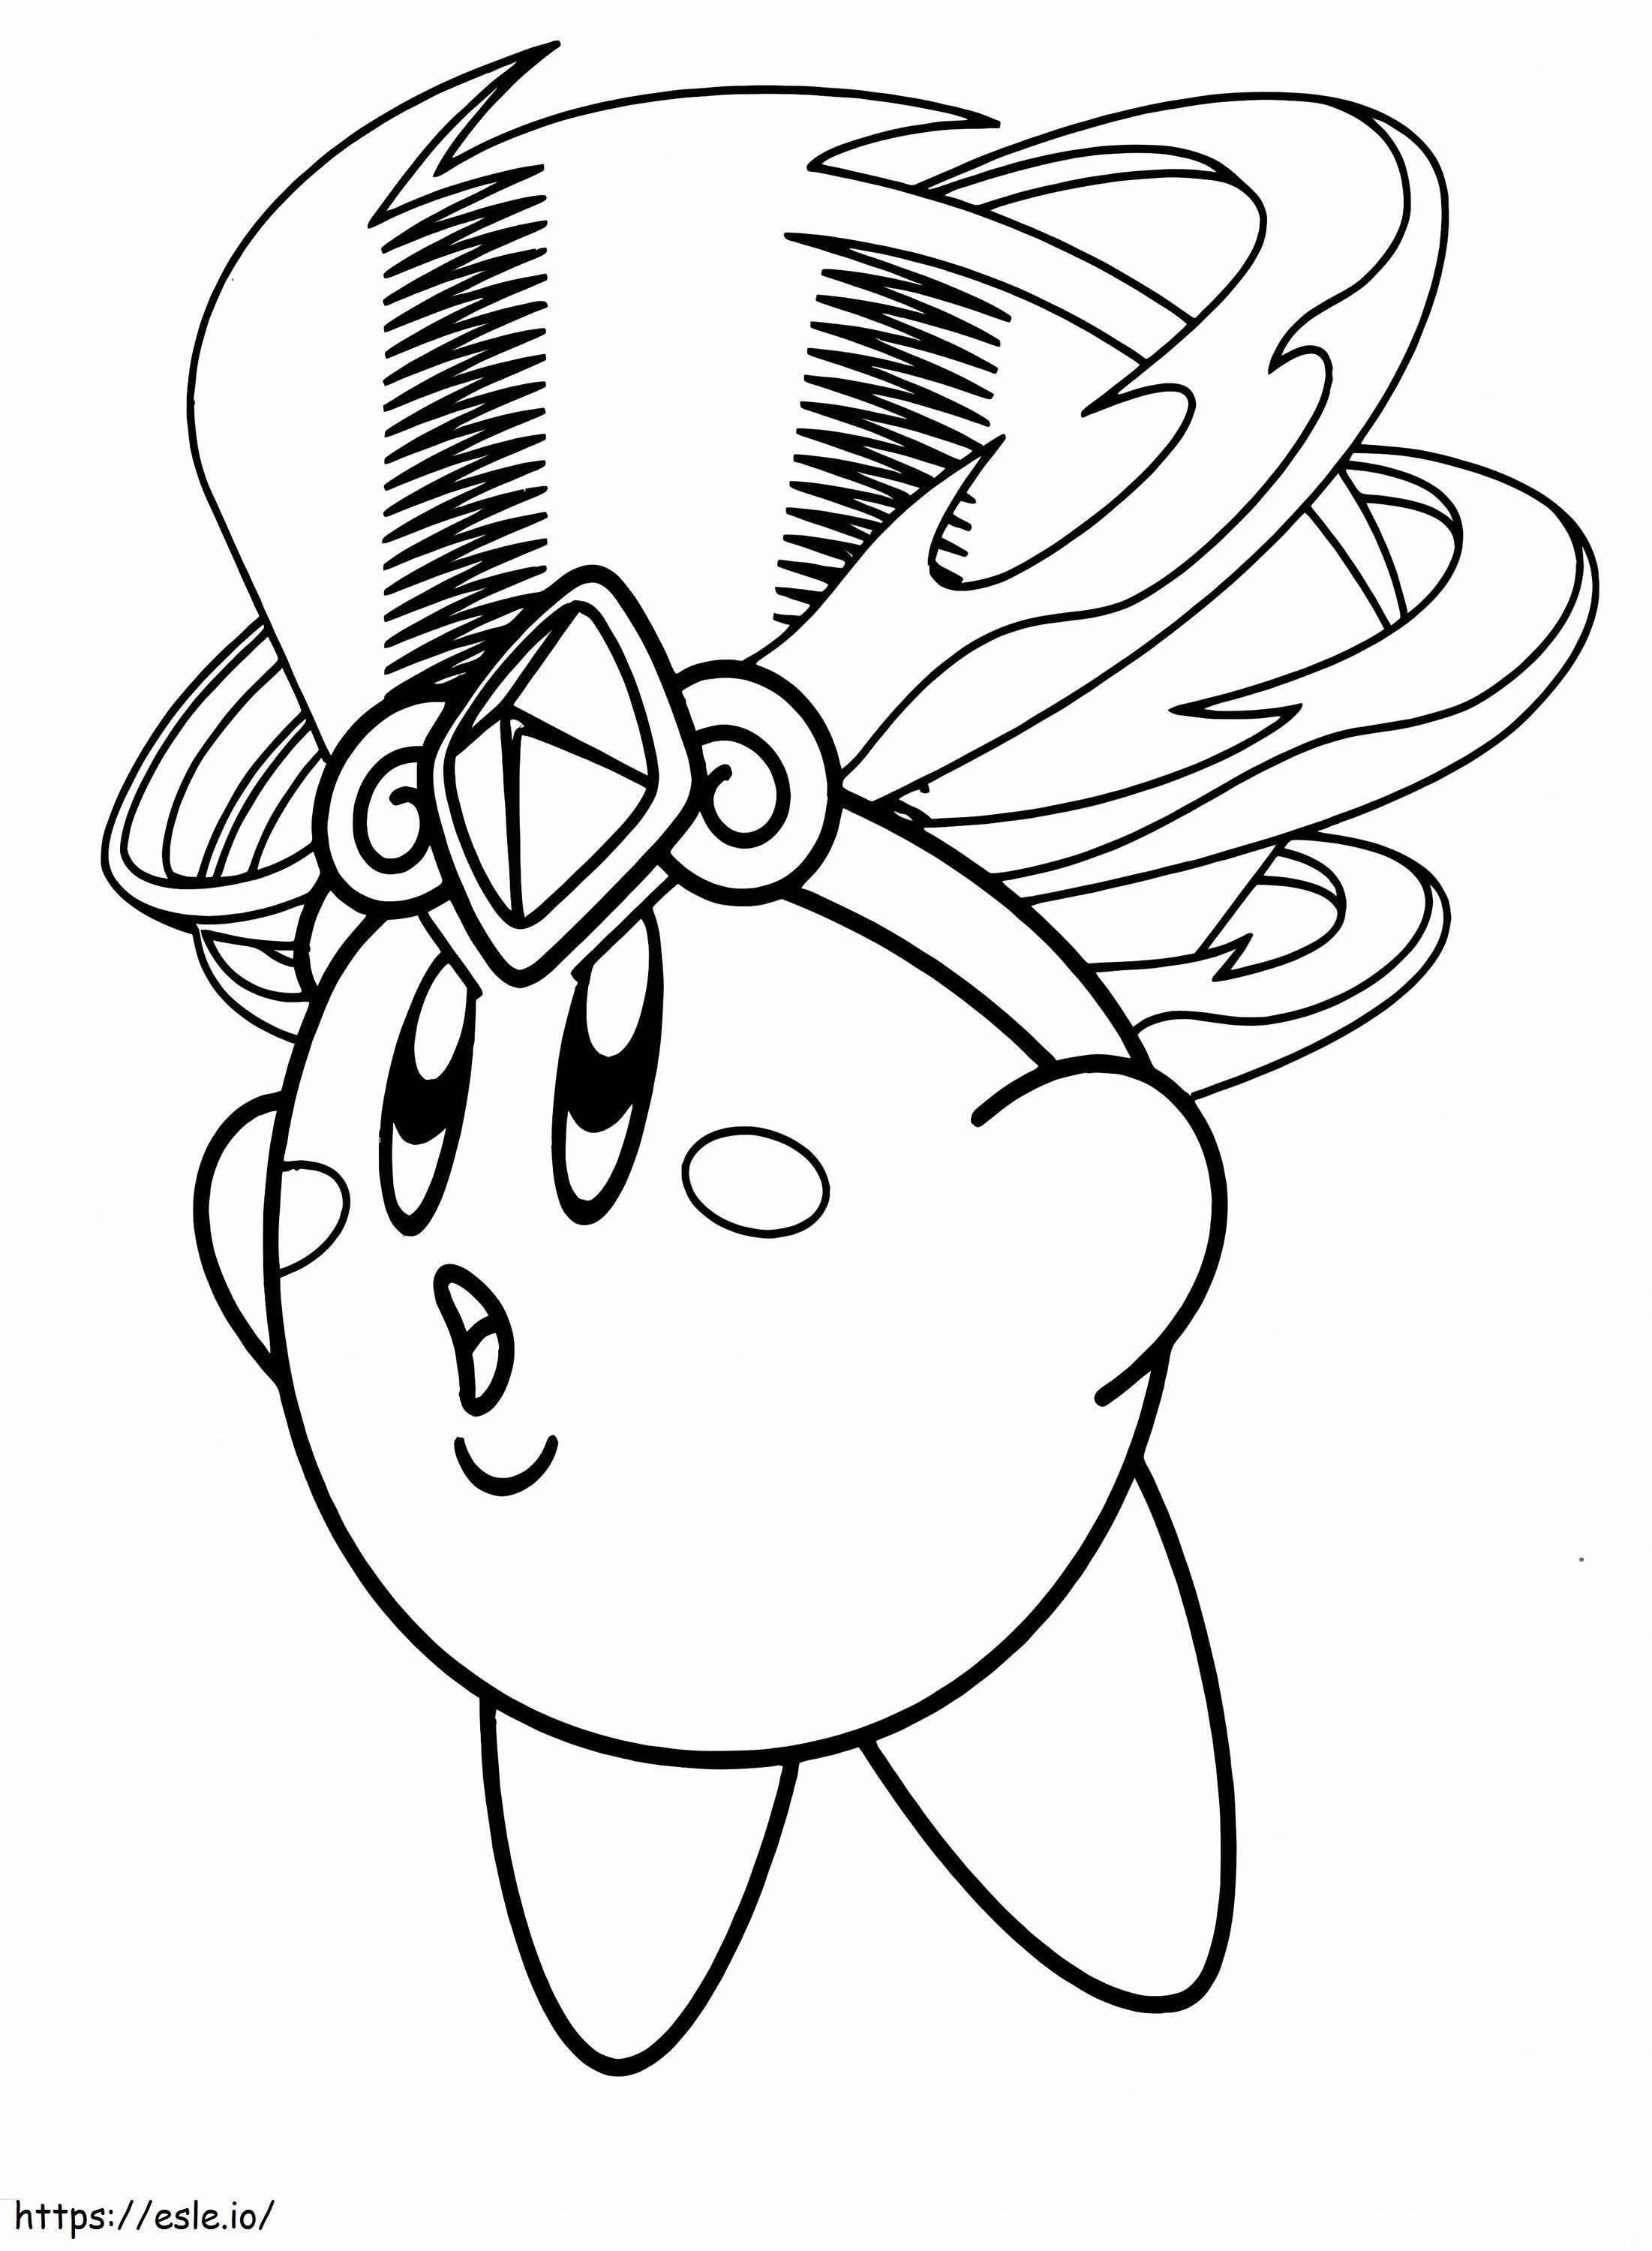 Erstaunlicher Kirby ausmalbilder